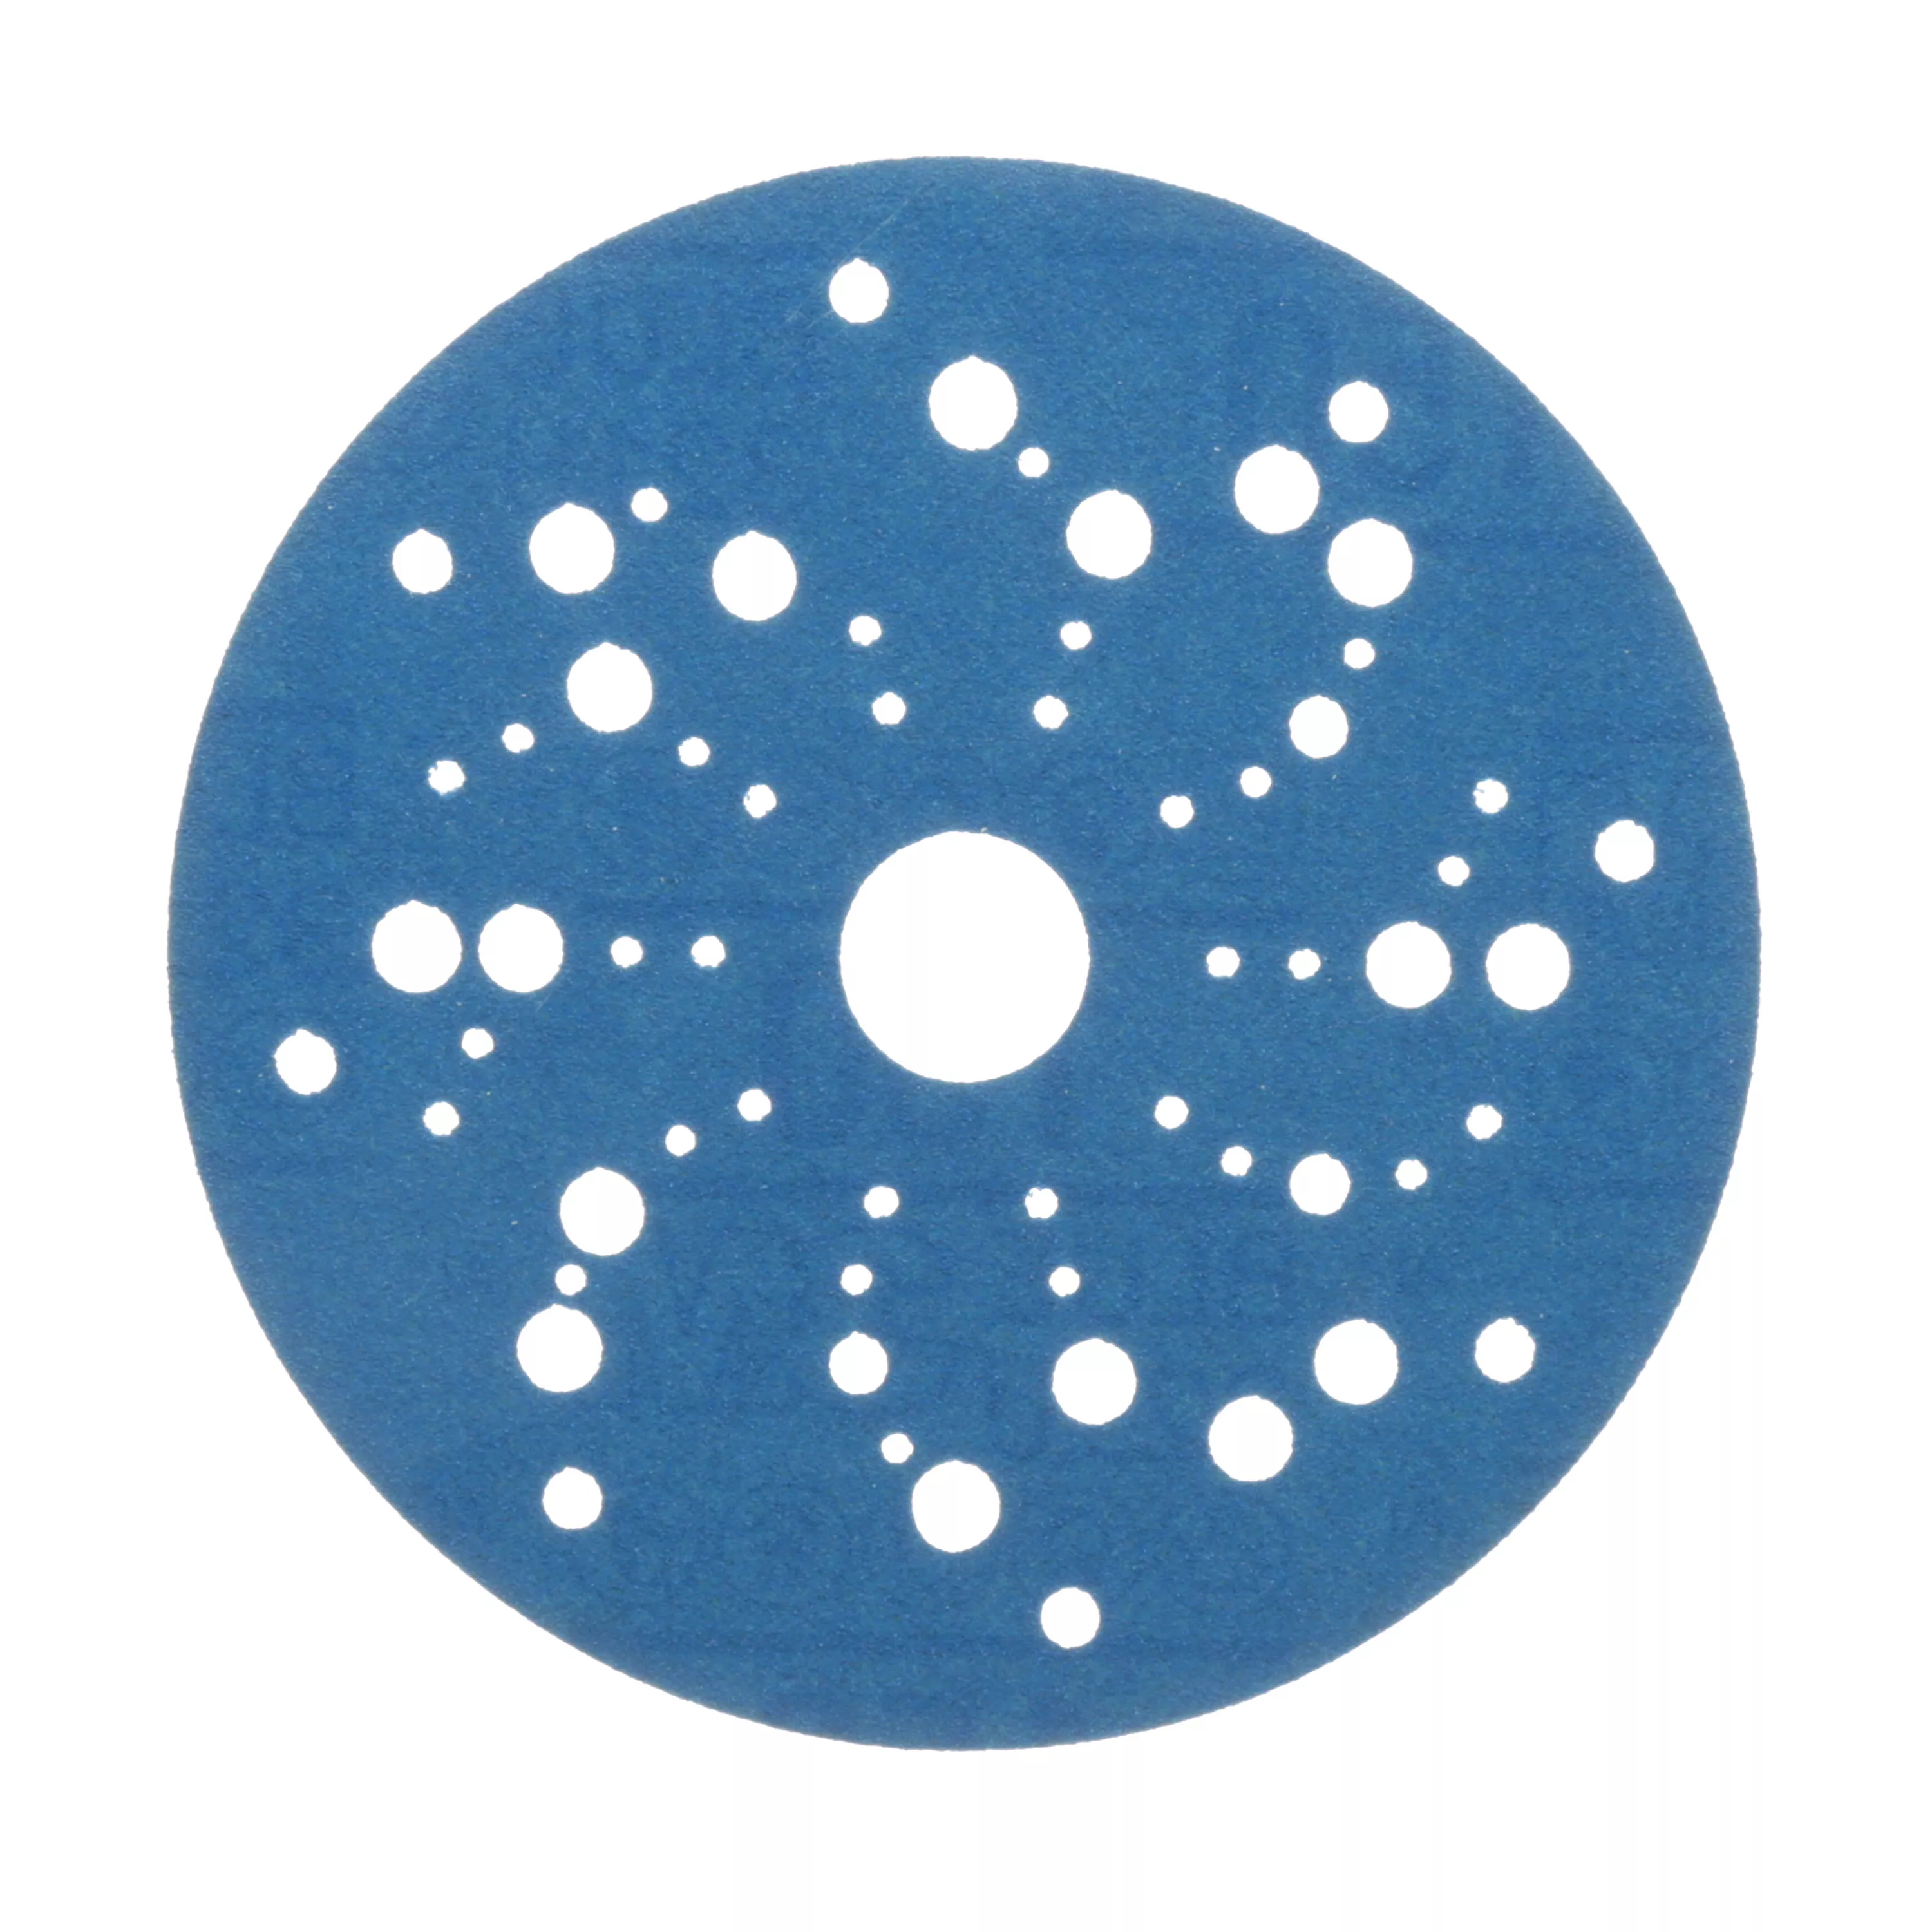 3M™ Hookit™ Blue Abrasive Disc 321U Multi-hole, 36160, 5 in, 150, 50
discs per carton, 4 cartons per case